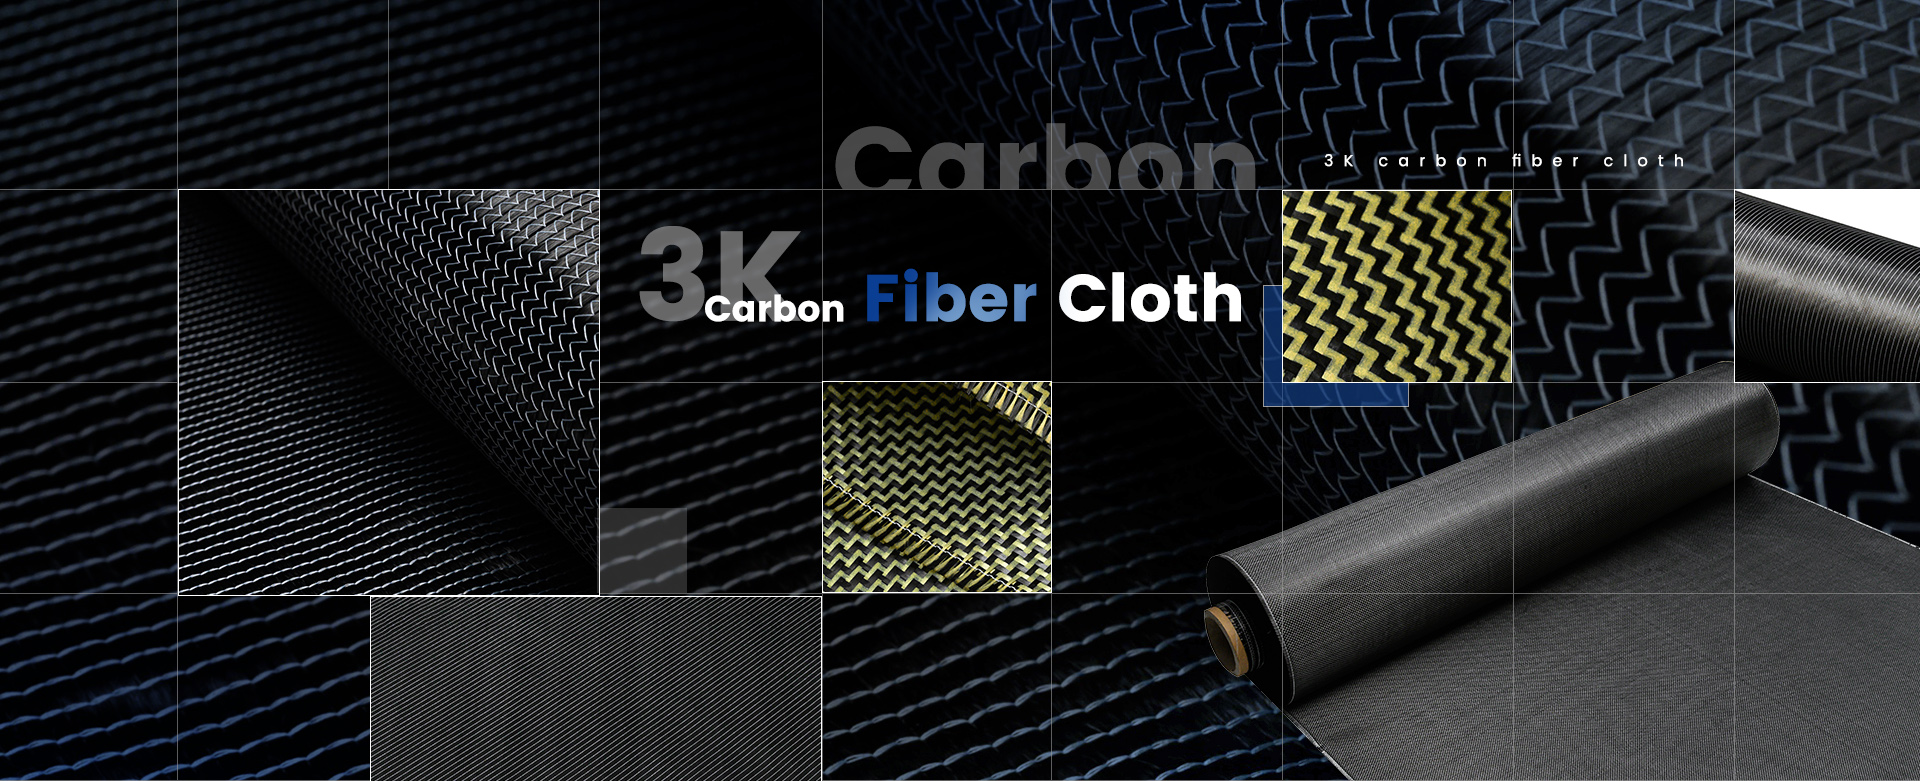 Carbon Fiber Fabric Cloth, Carbon Fiber Vinyl Fabric, Carbon Fiber Woven Fabric - Protech